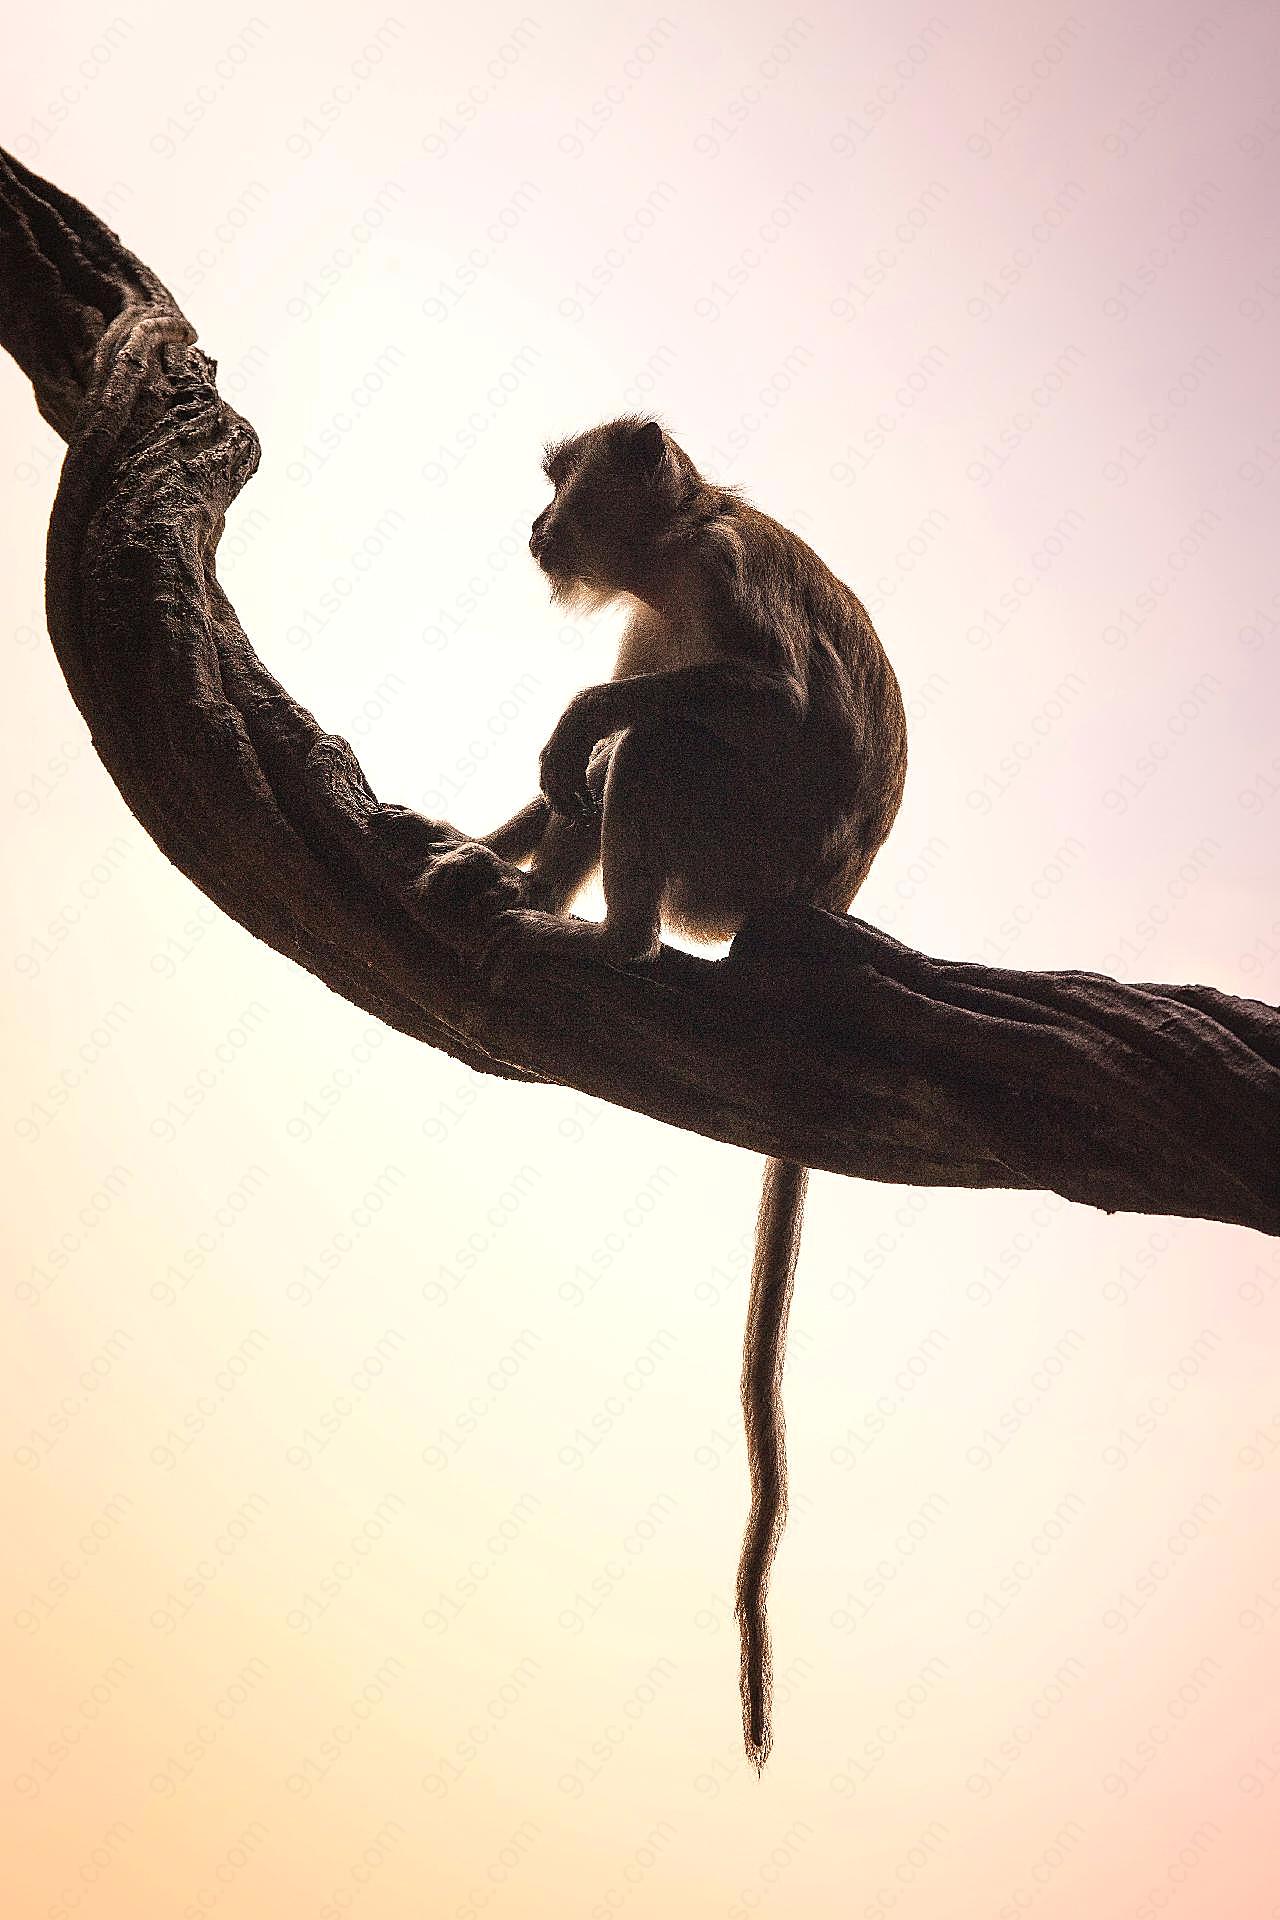 可爱野生猕猴图片高清摄影